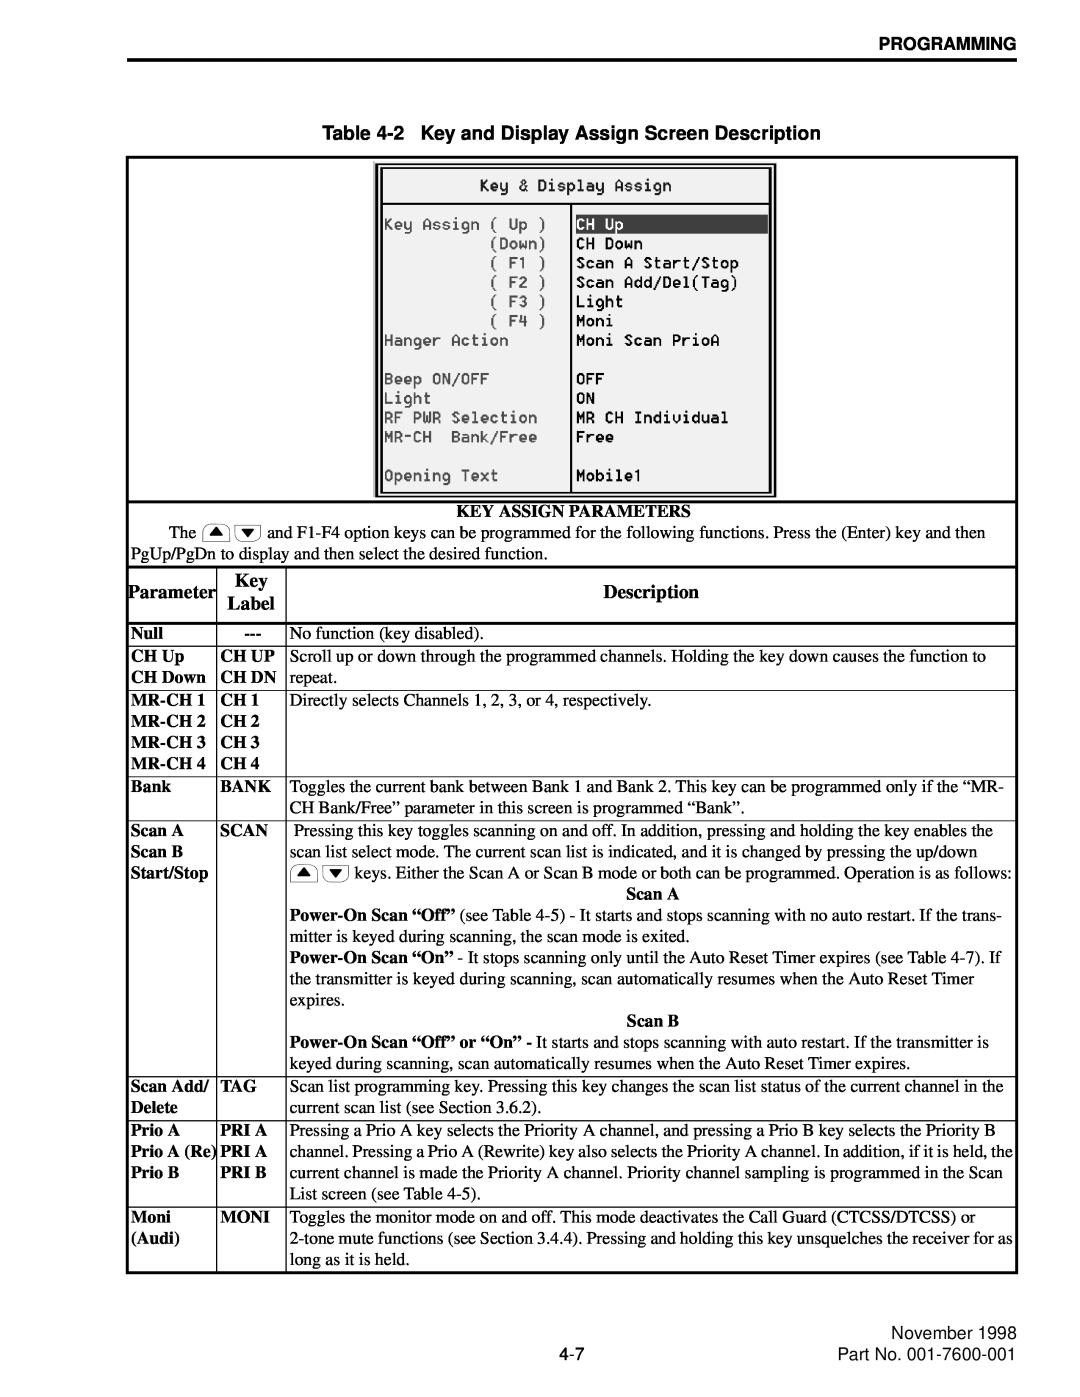 EFJohnson 764X, 761X service manual Description, Parameter, Label 